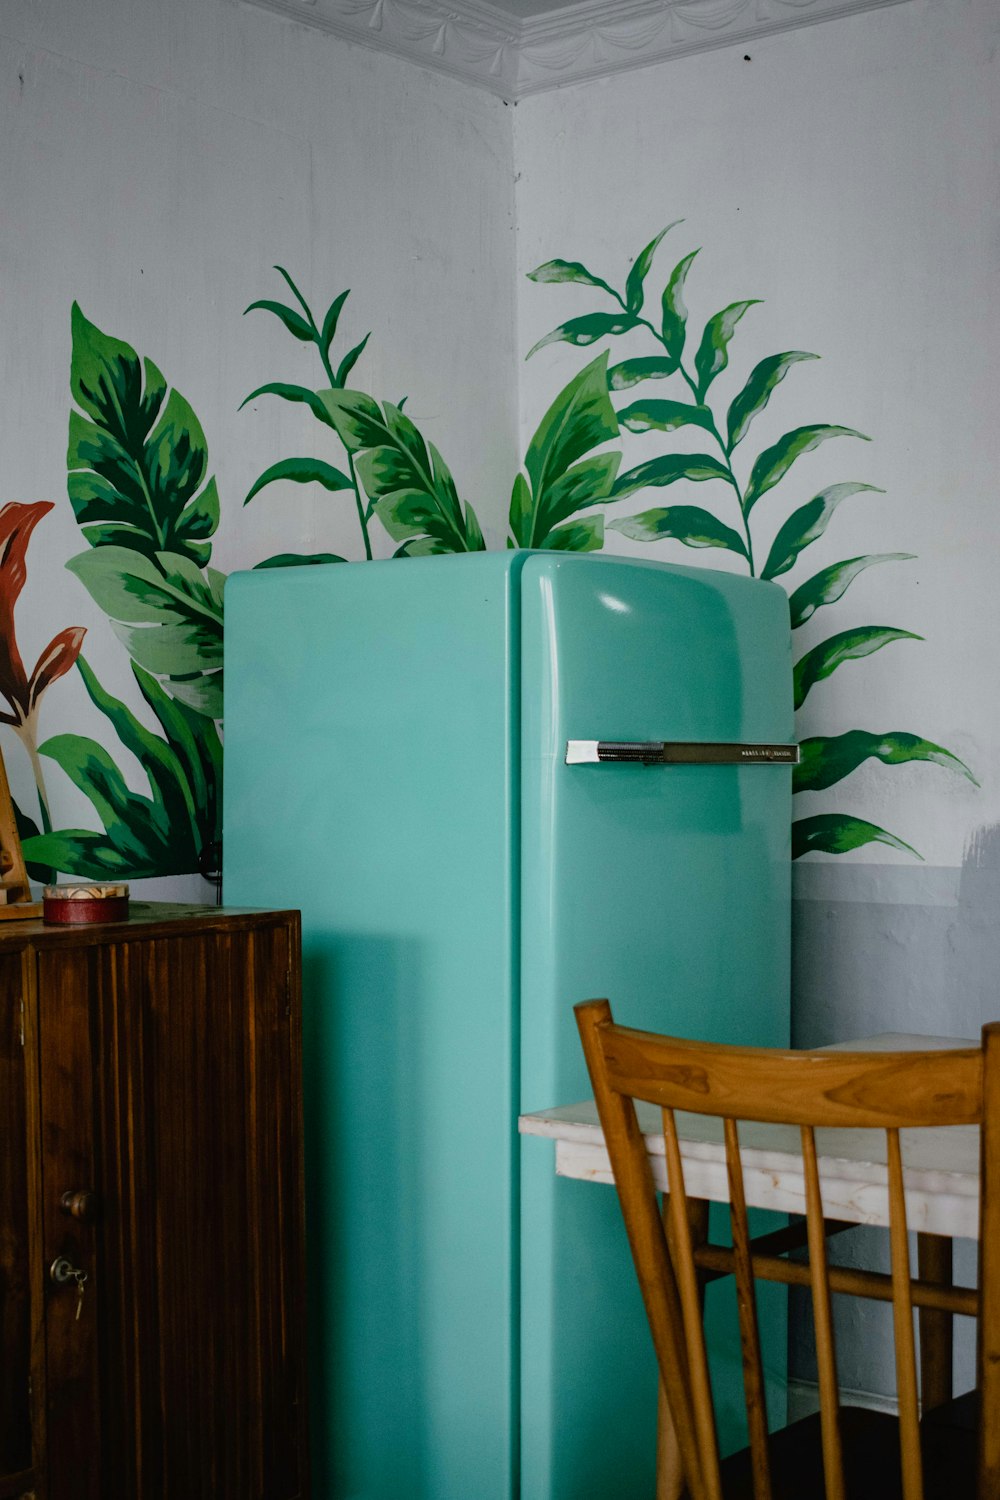 frigorifero blu accanto alla pianta a foglia verde